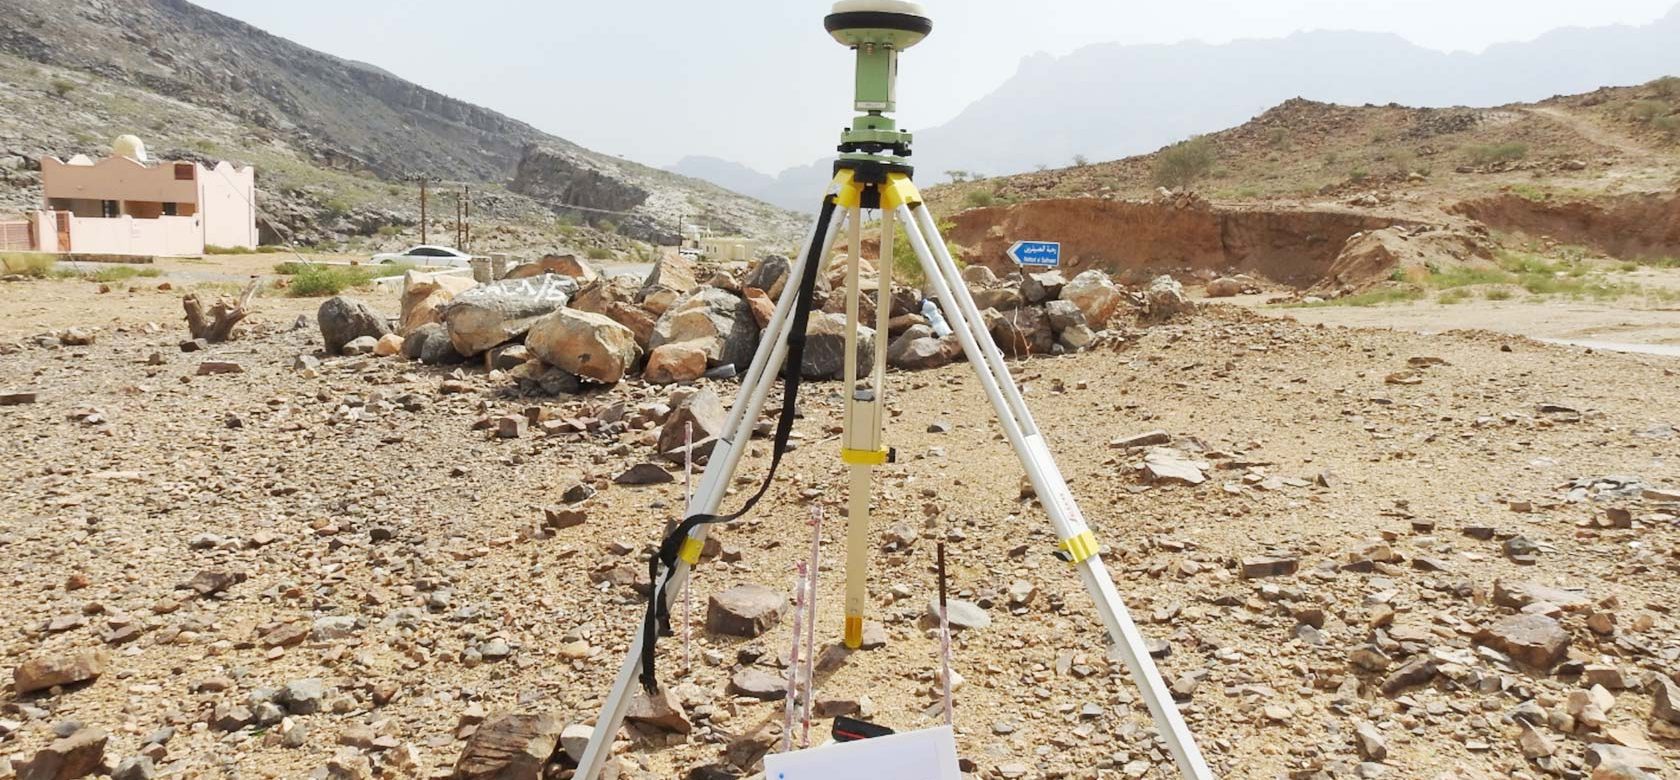 Site Survey work in Oman by Hadi Engineering